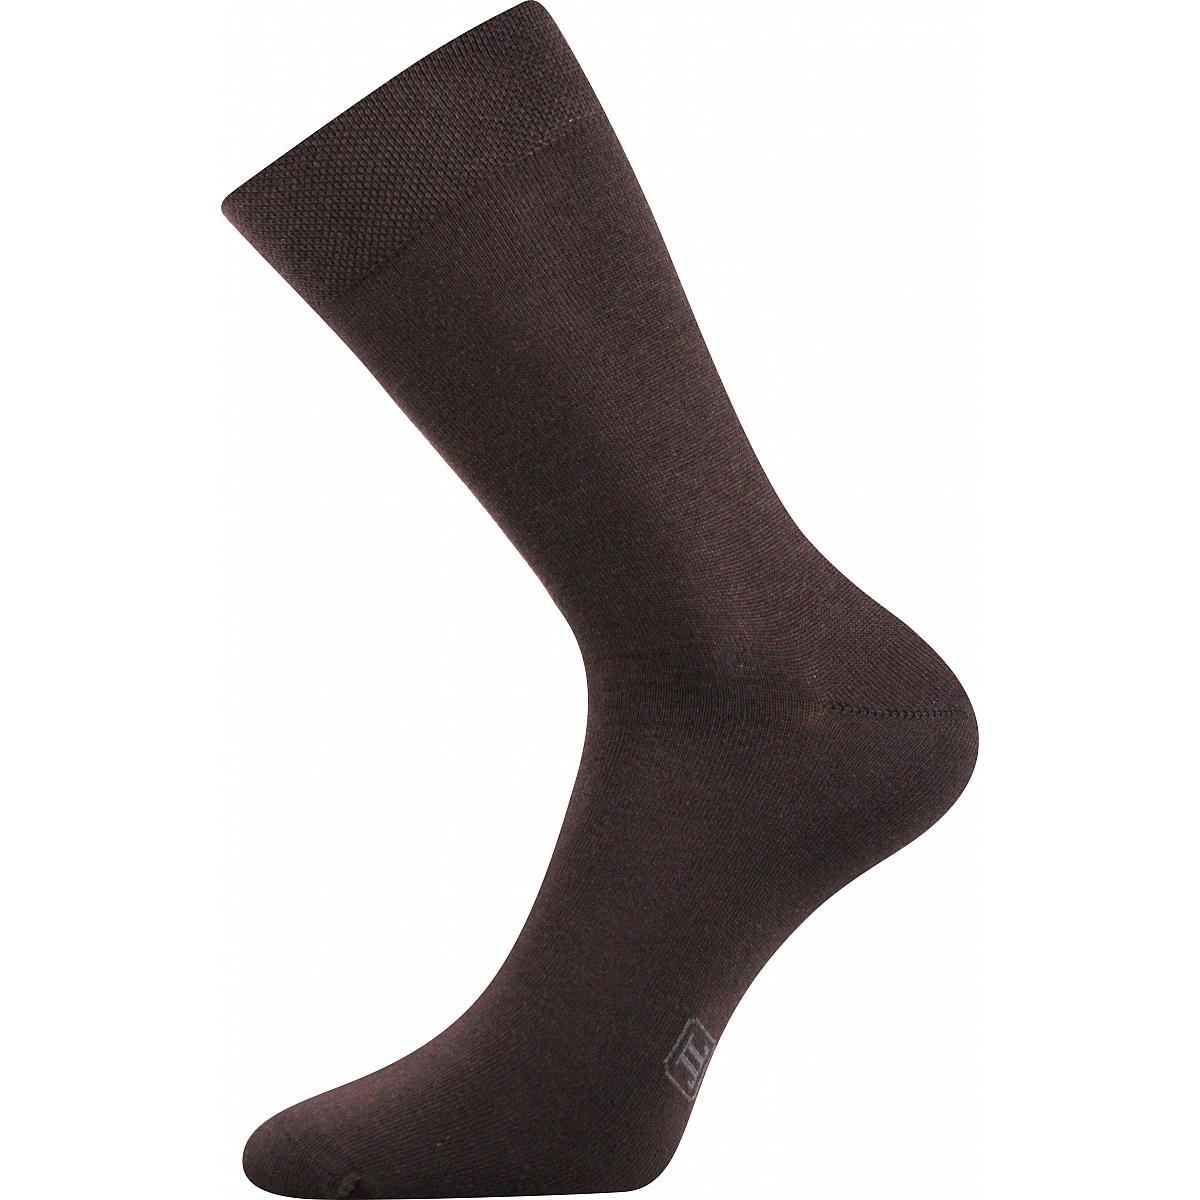 Ponožky pánské Lonka Decolor - hnědé, 43-46